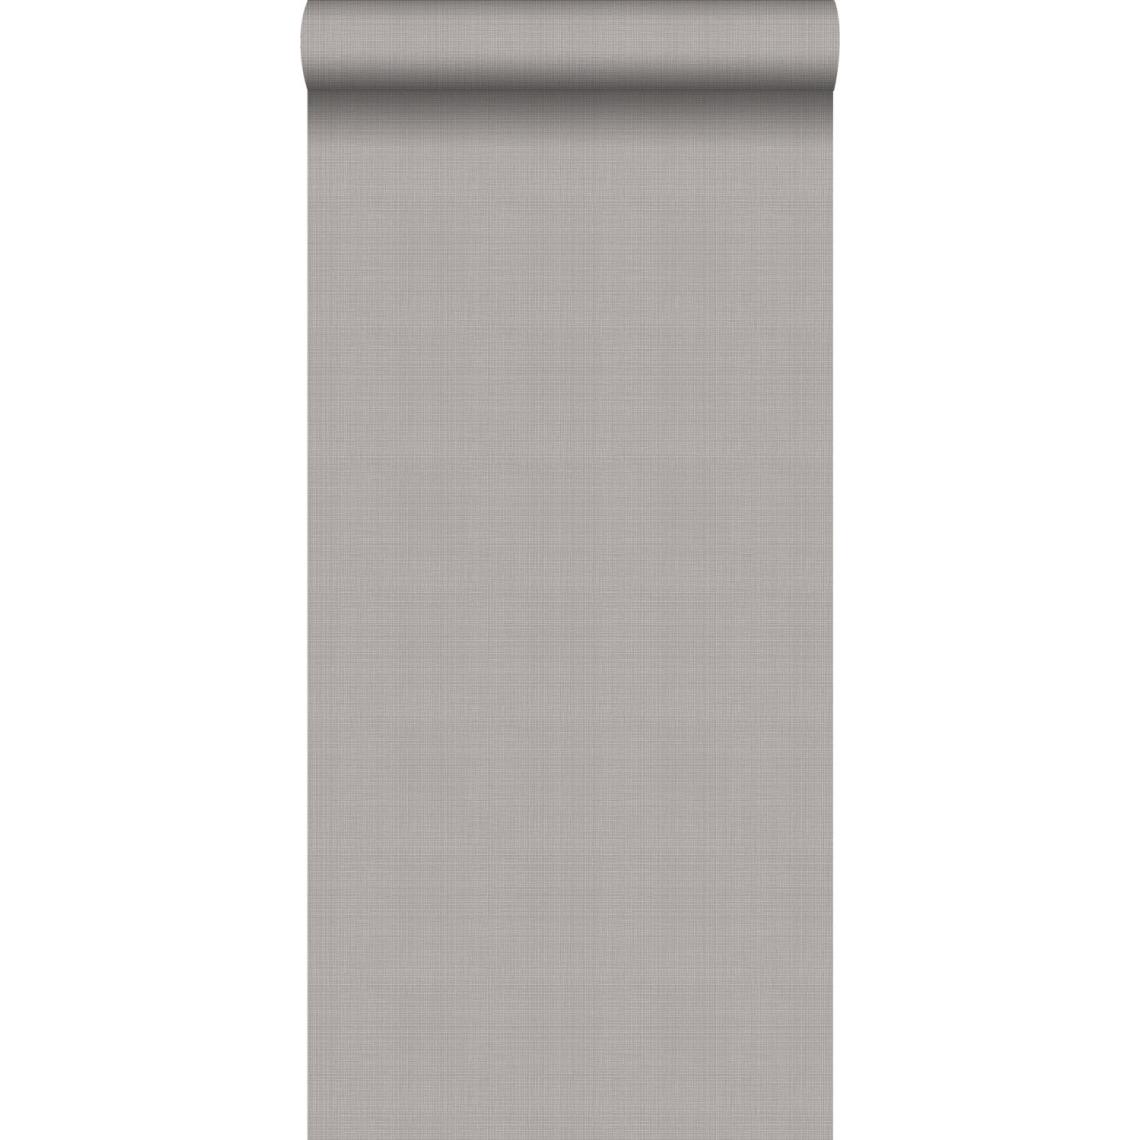 ESTAhome - ESTAhome papier peint lin gris clair - 139026 - 0.53 x 10.05 m - Papier peint